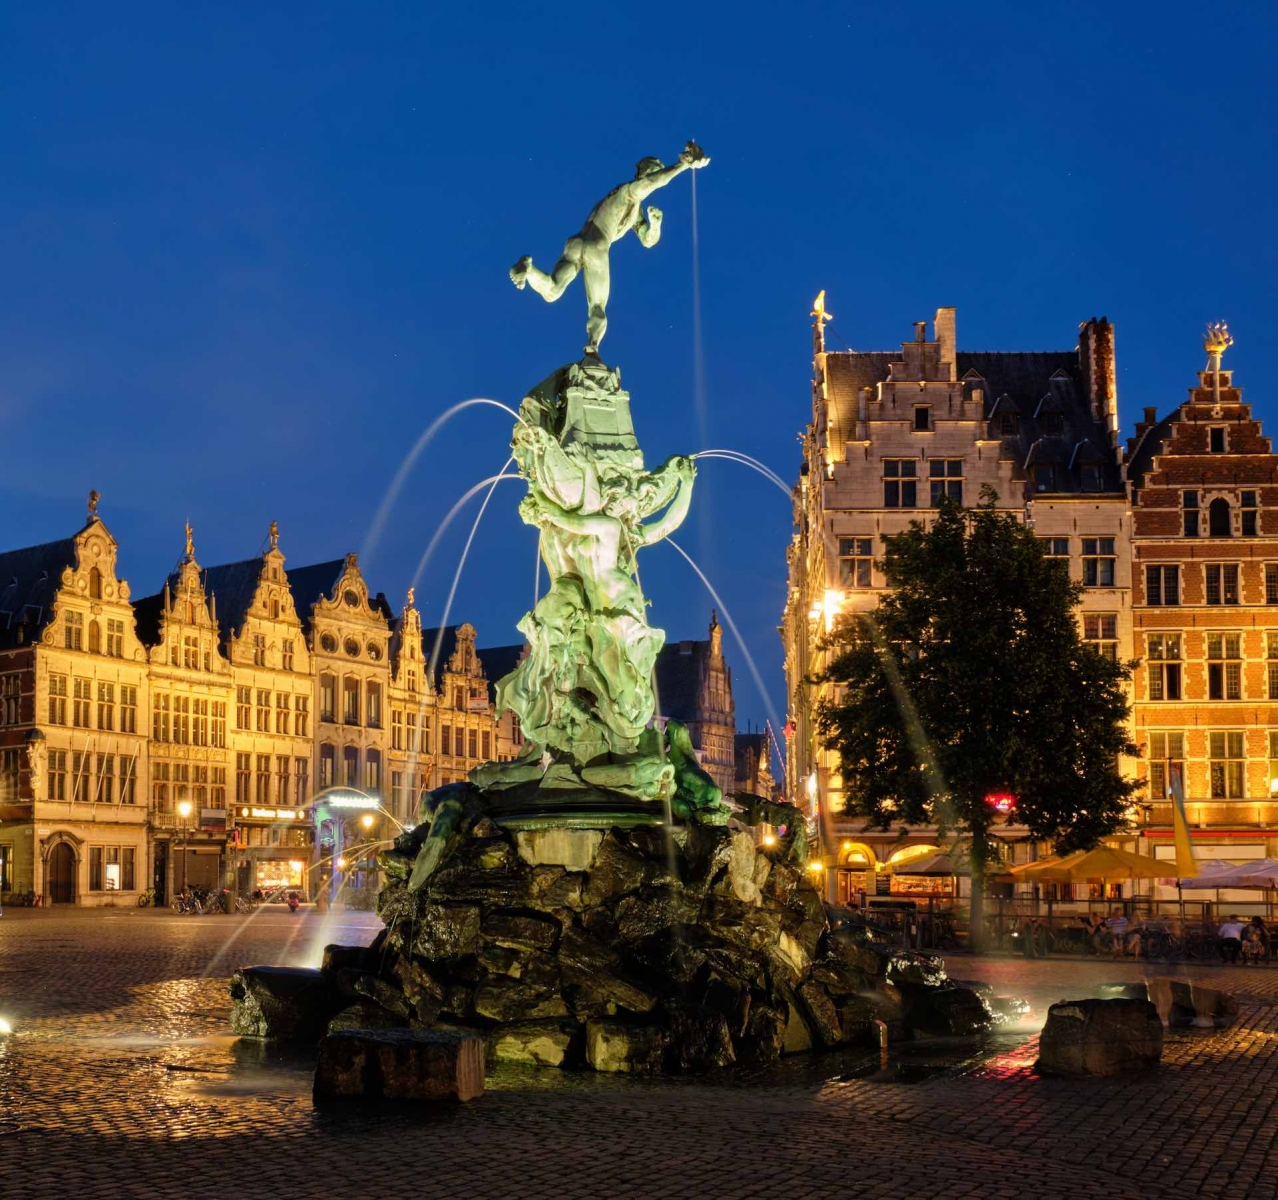 Grote Markt d'Anvers avec la célèbre statue et la fontaine de Brabo la nuit, Belgique